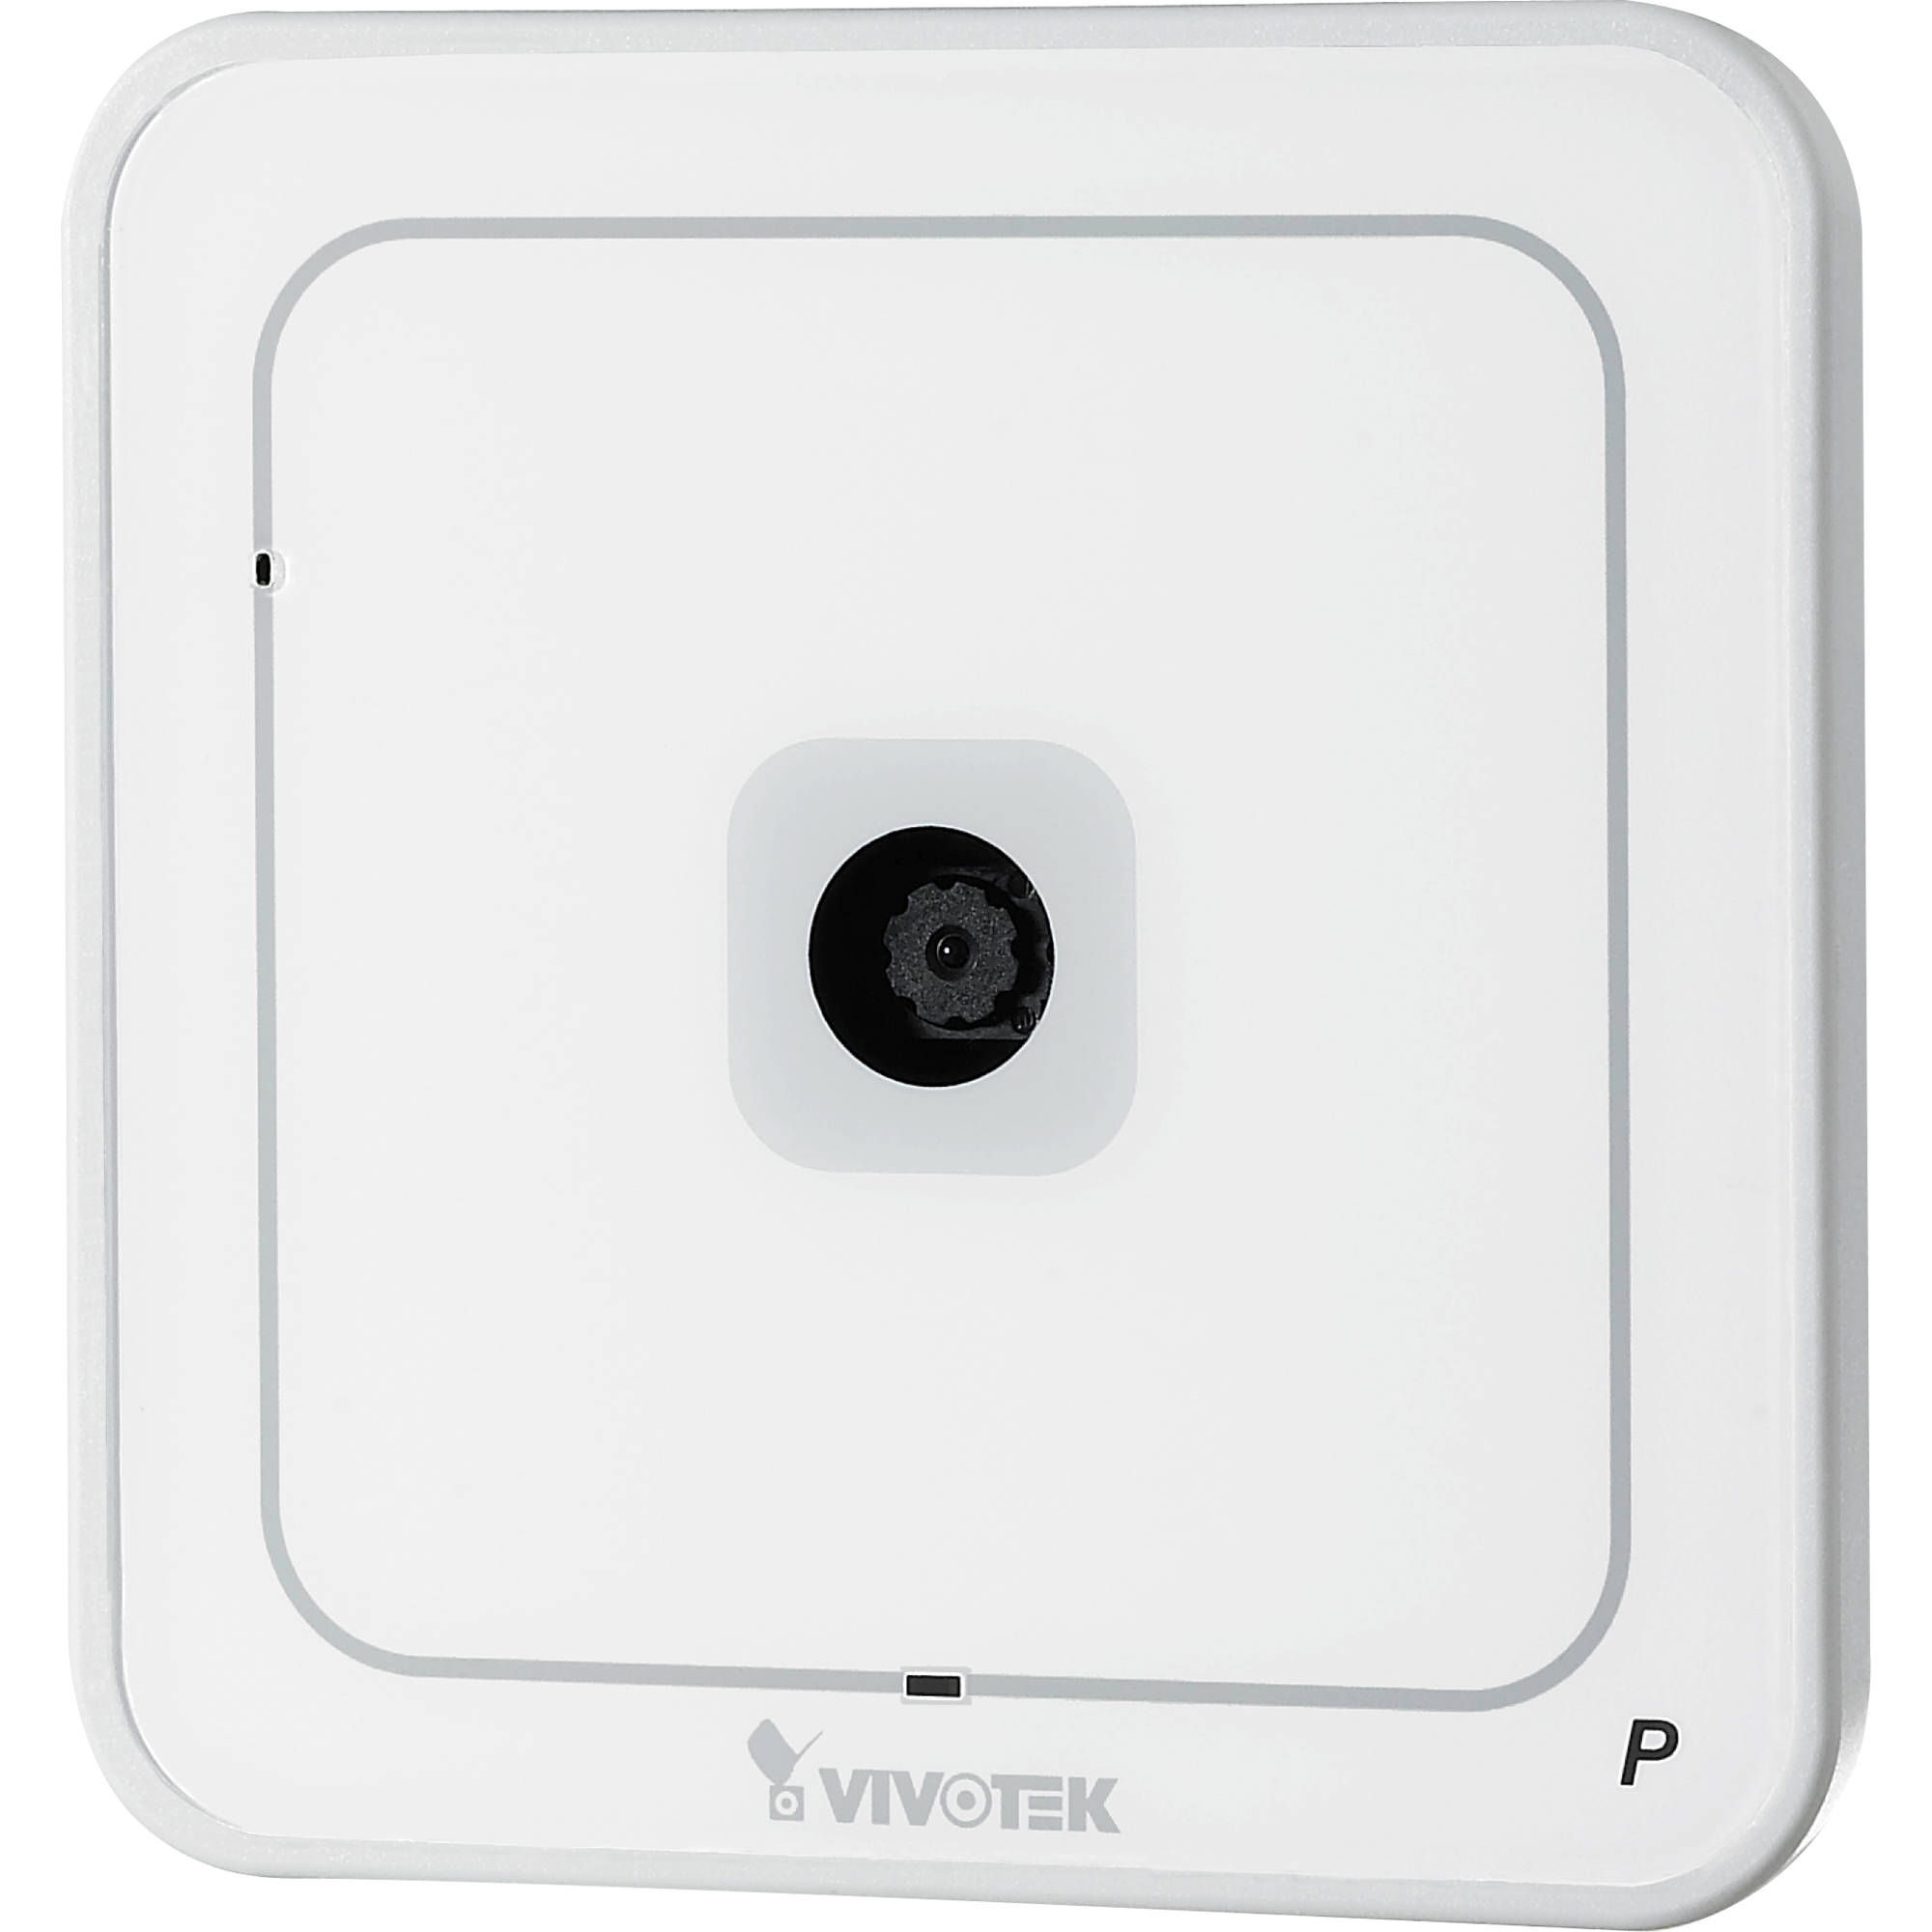 Vivotek IP7133 Wired Network Camera 